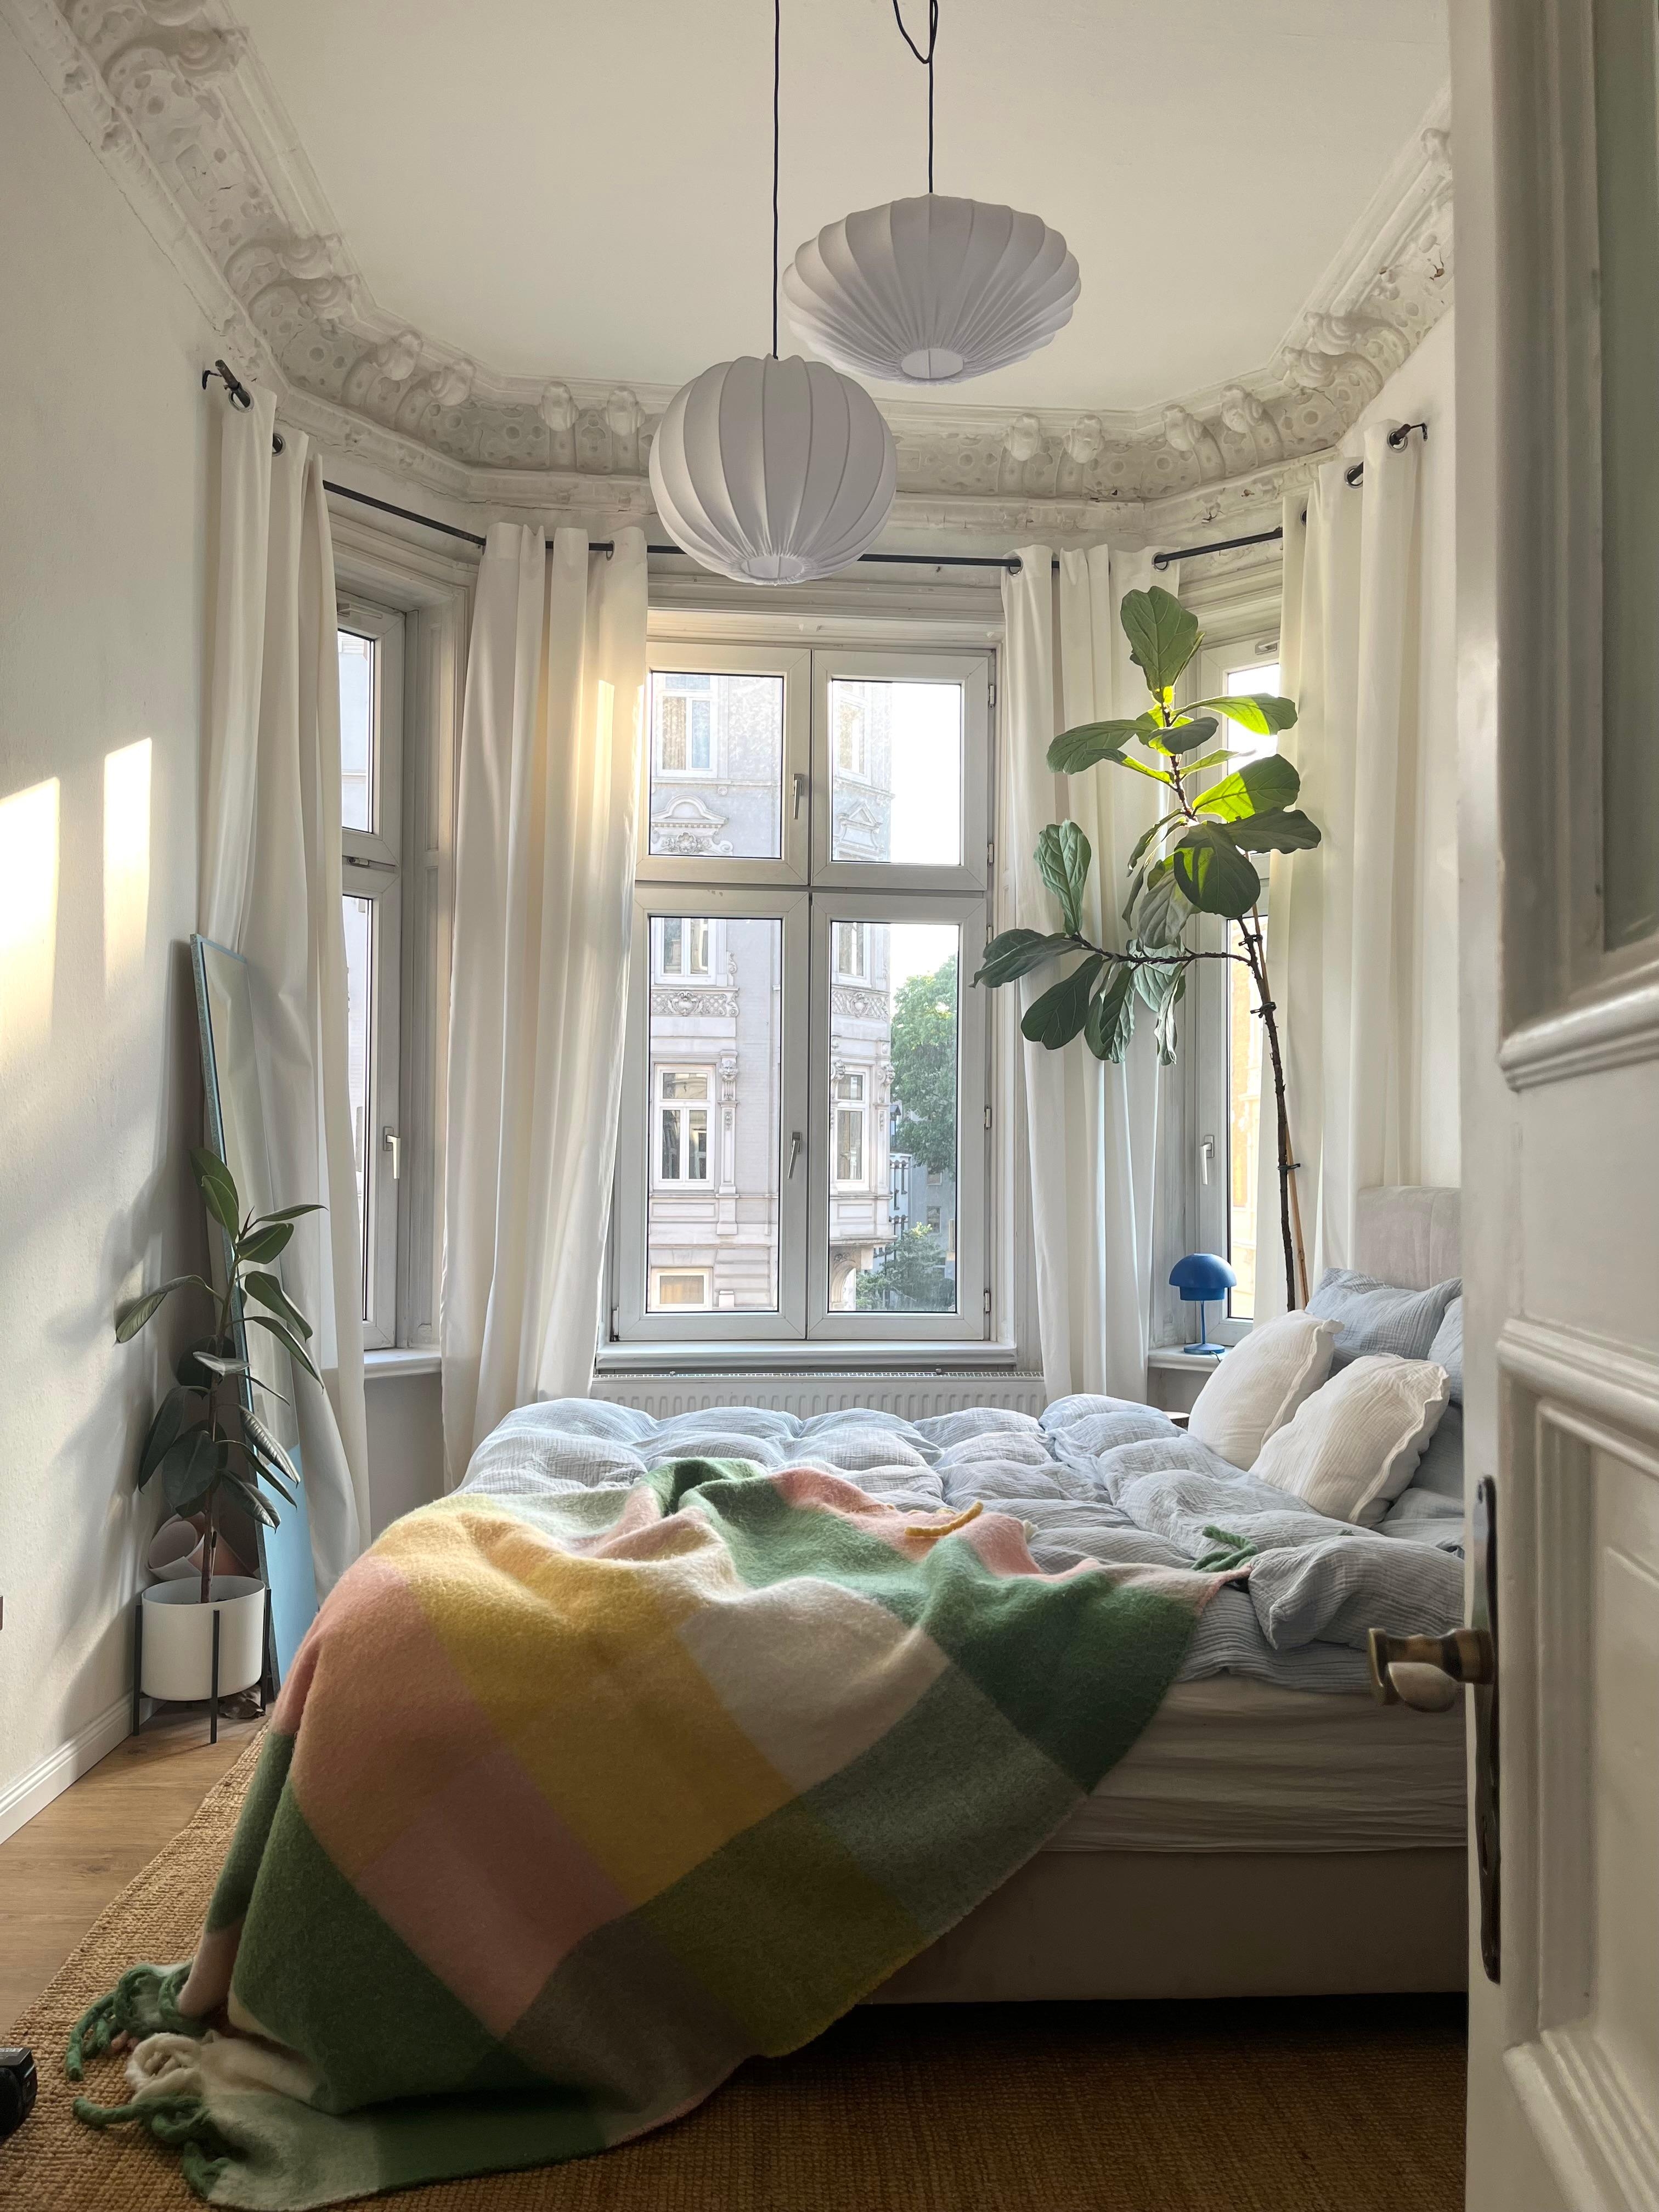 Der Sommer ist im Schlafzimmer angekommen☀️ Passend zum Sommer natürlich ordentlich Farbe!

#schlafzimmer #altbau